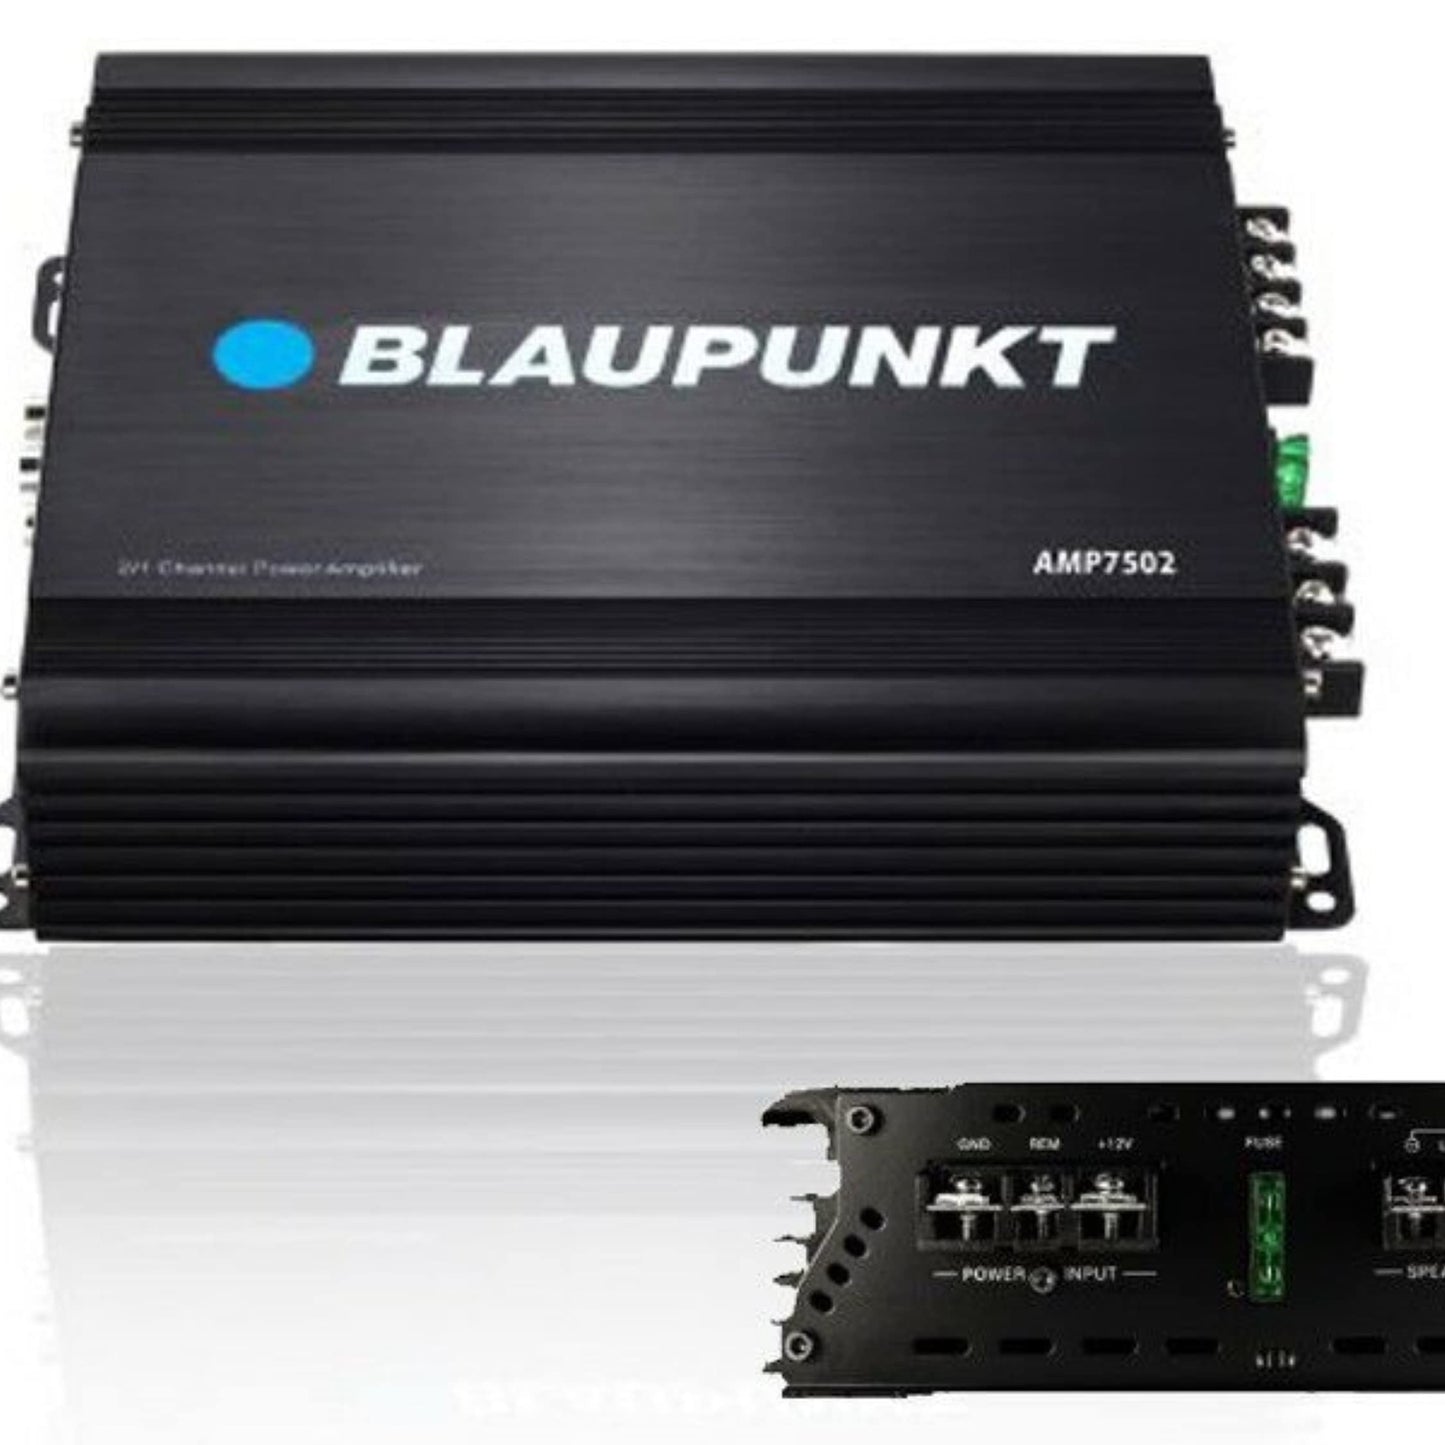 BLAUPUNKT 750W 2-Channel, Full-Range Amplifier (AMP7502)